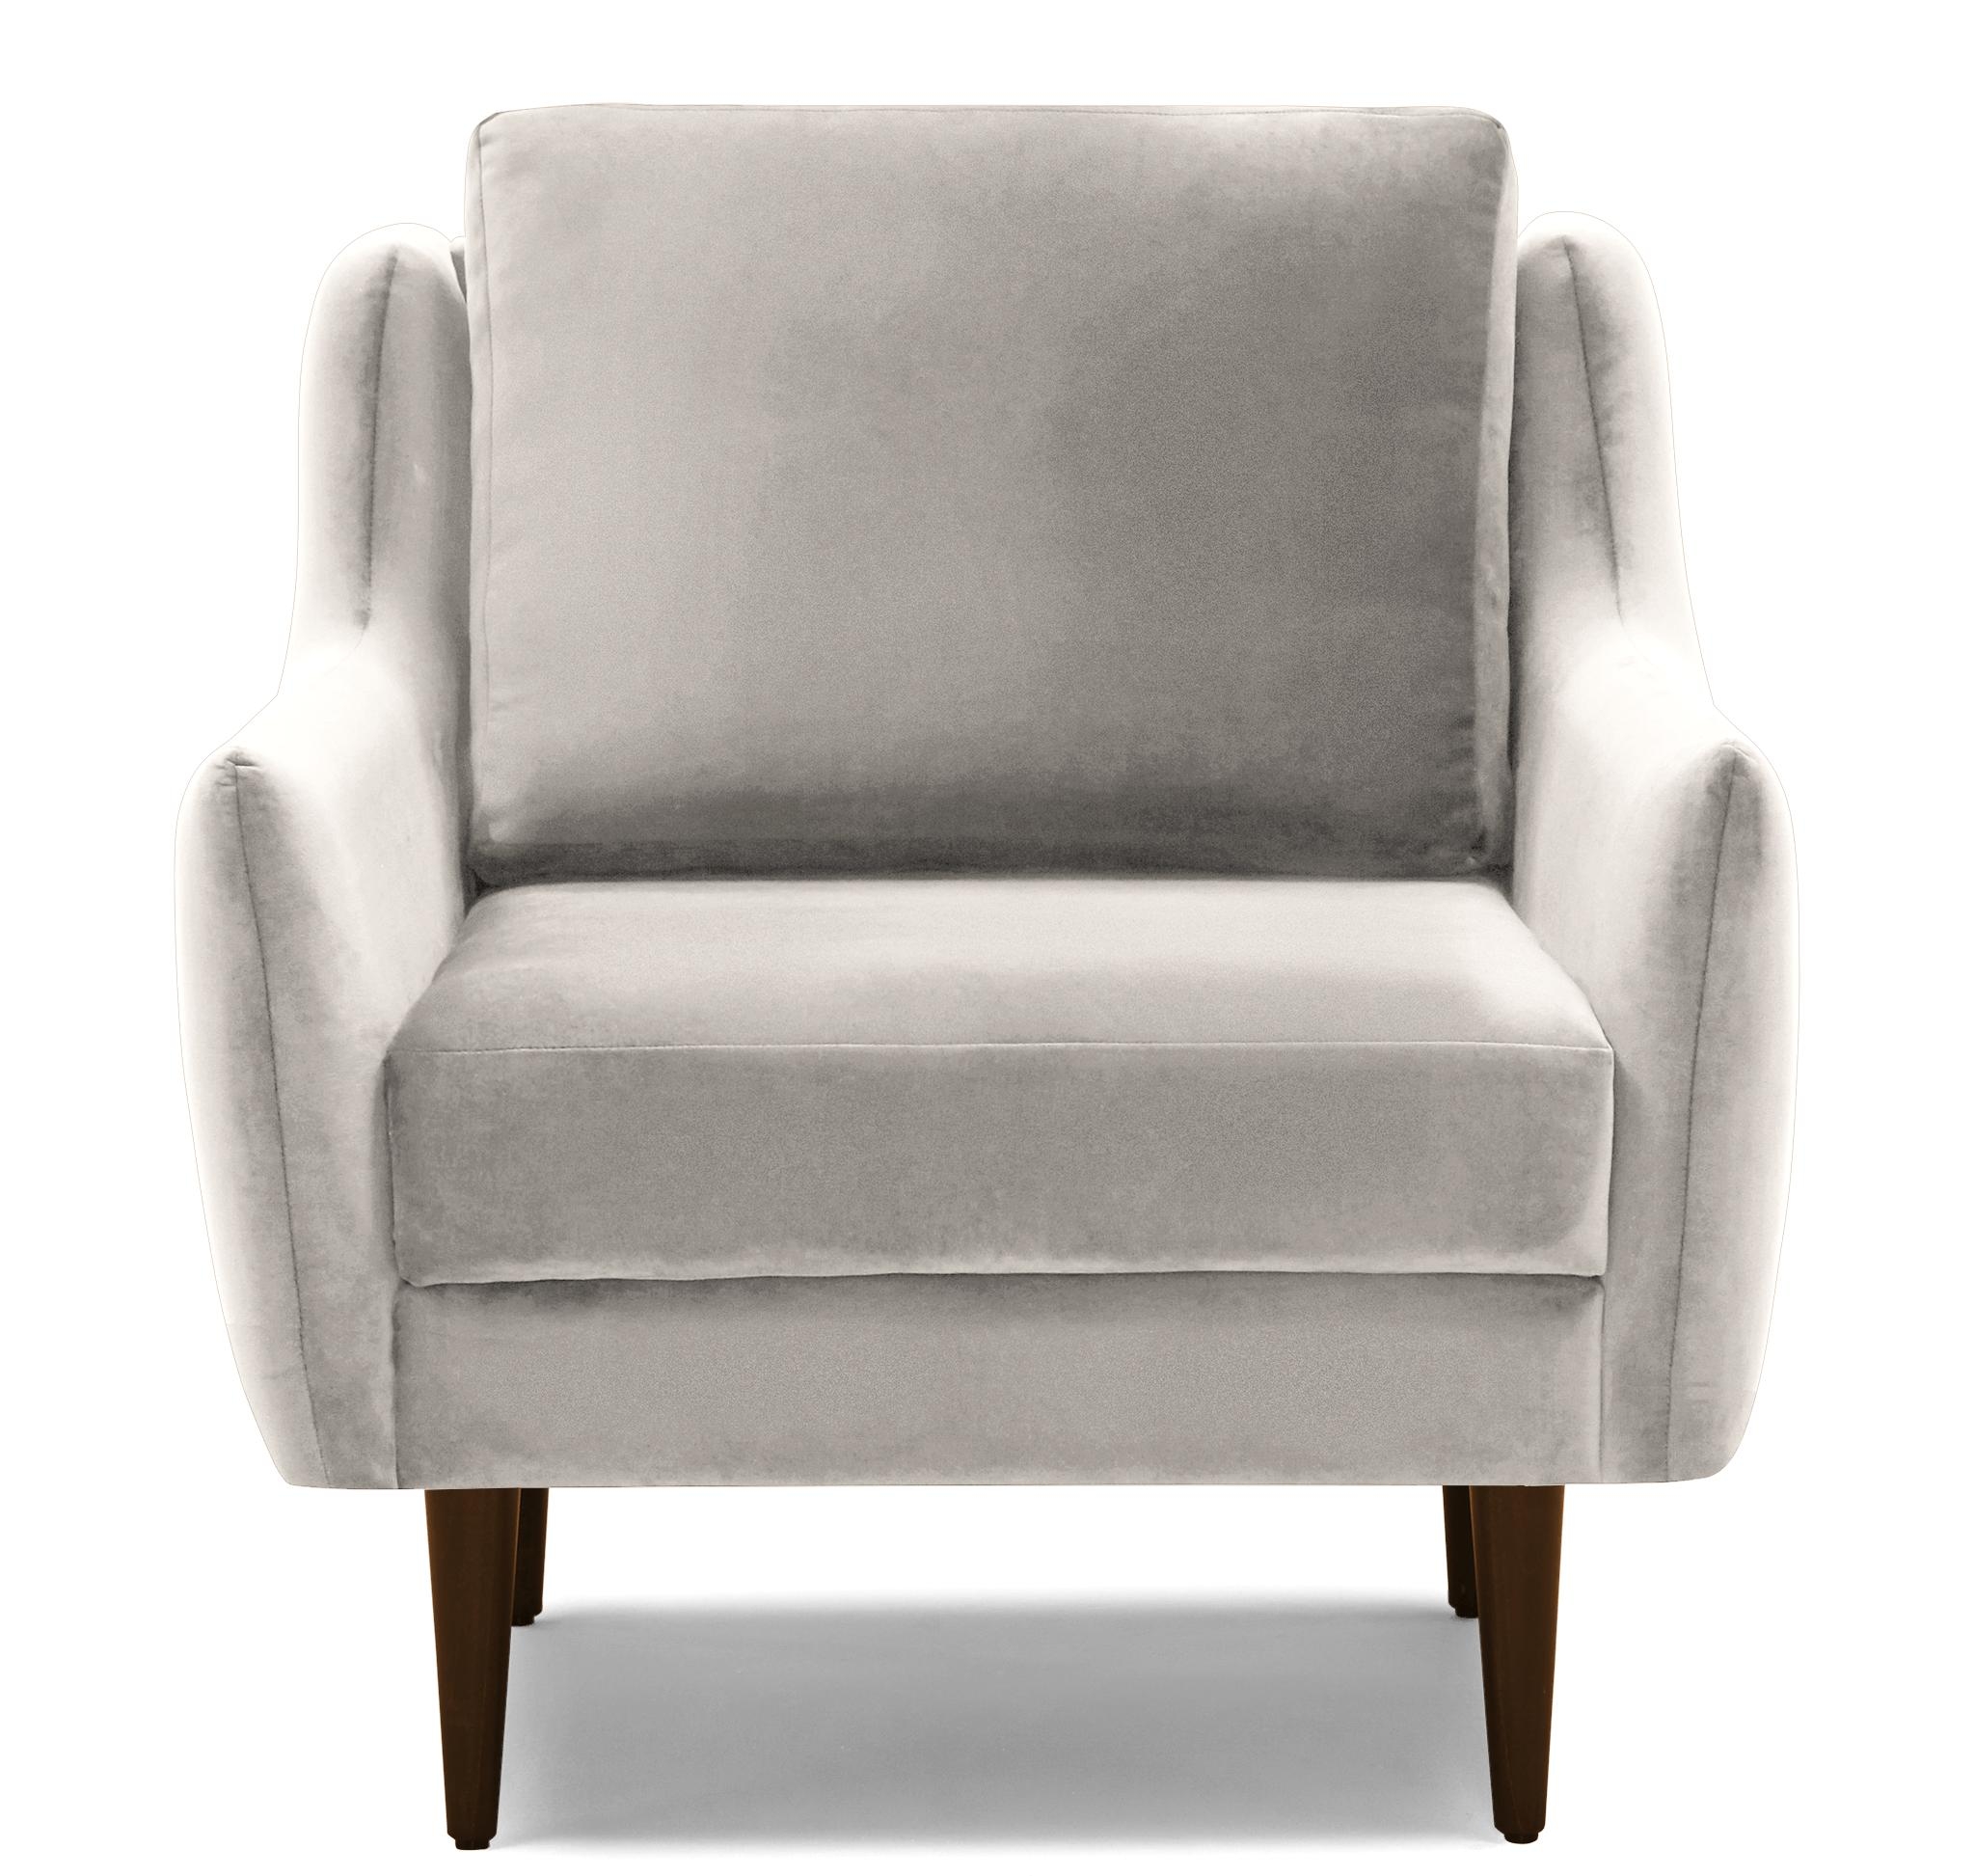 Beige/White Bell Mid Century Modern Chair - Merit Dove - Mocha - Image 0